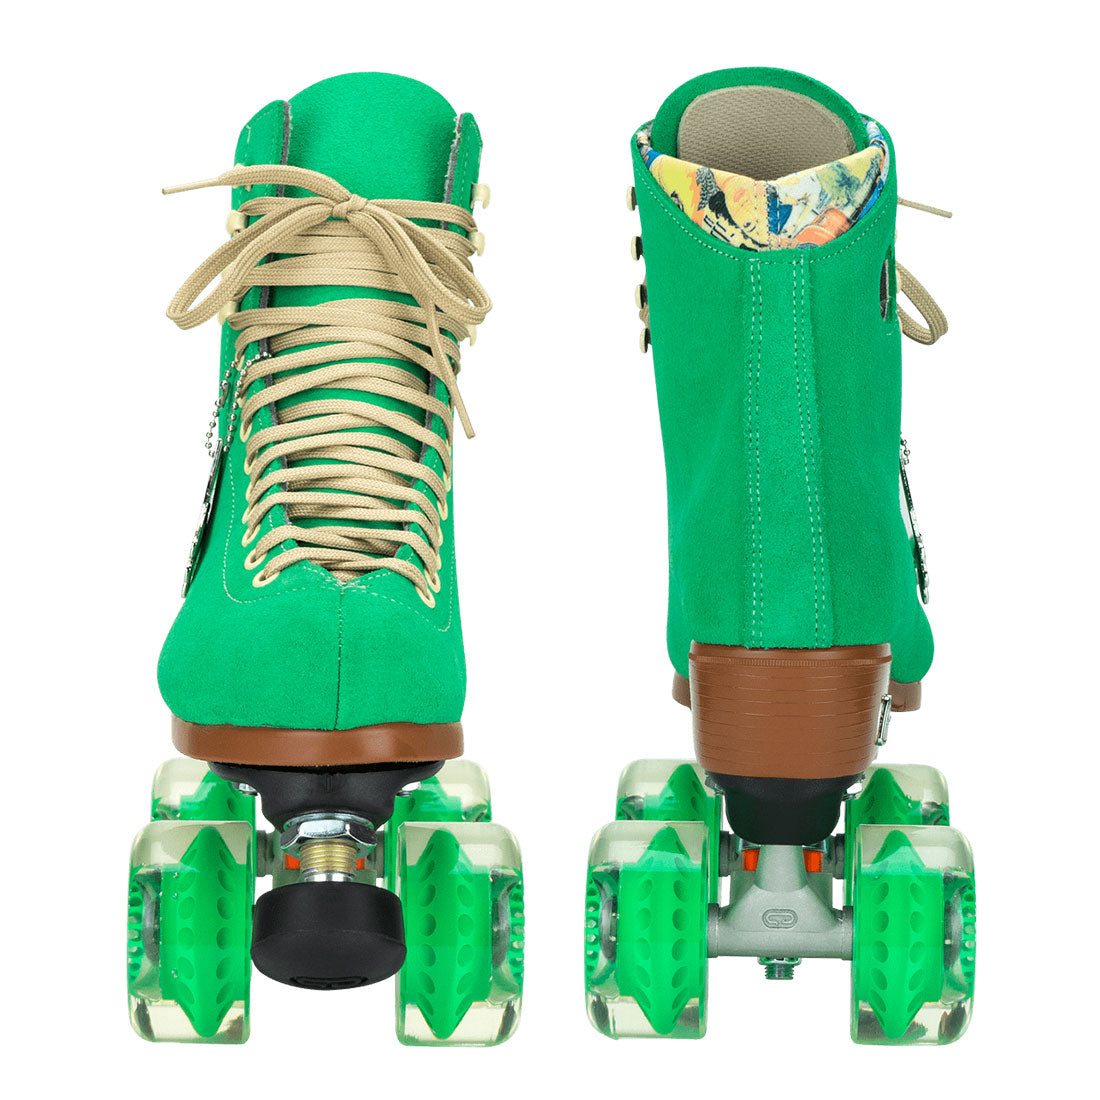 Moxi Lolly Skate - Green Apple Roller Skates